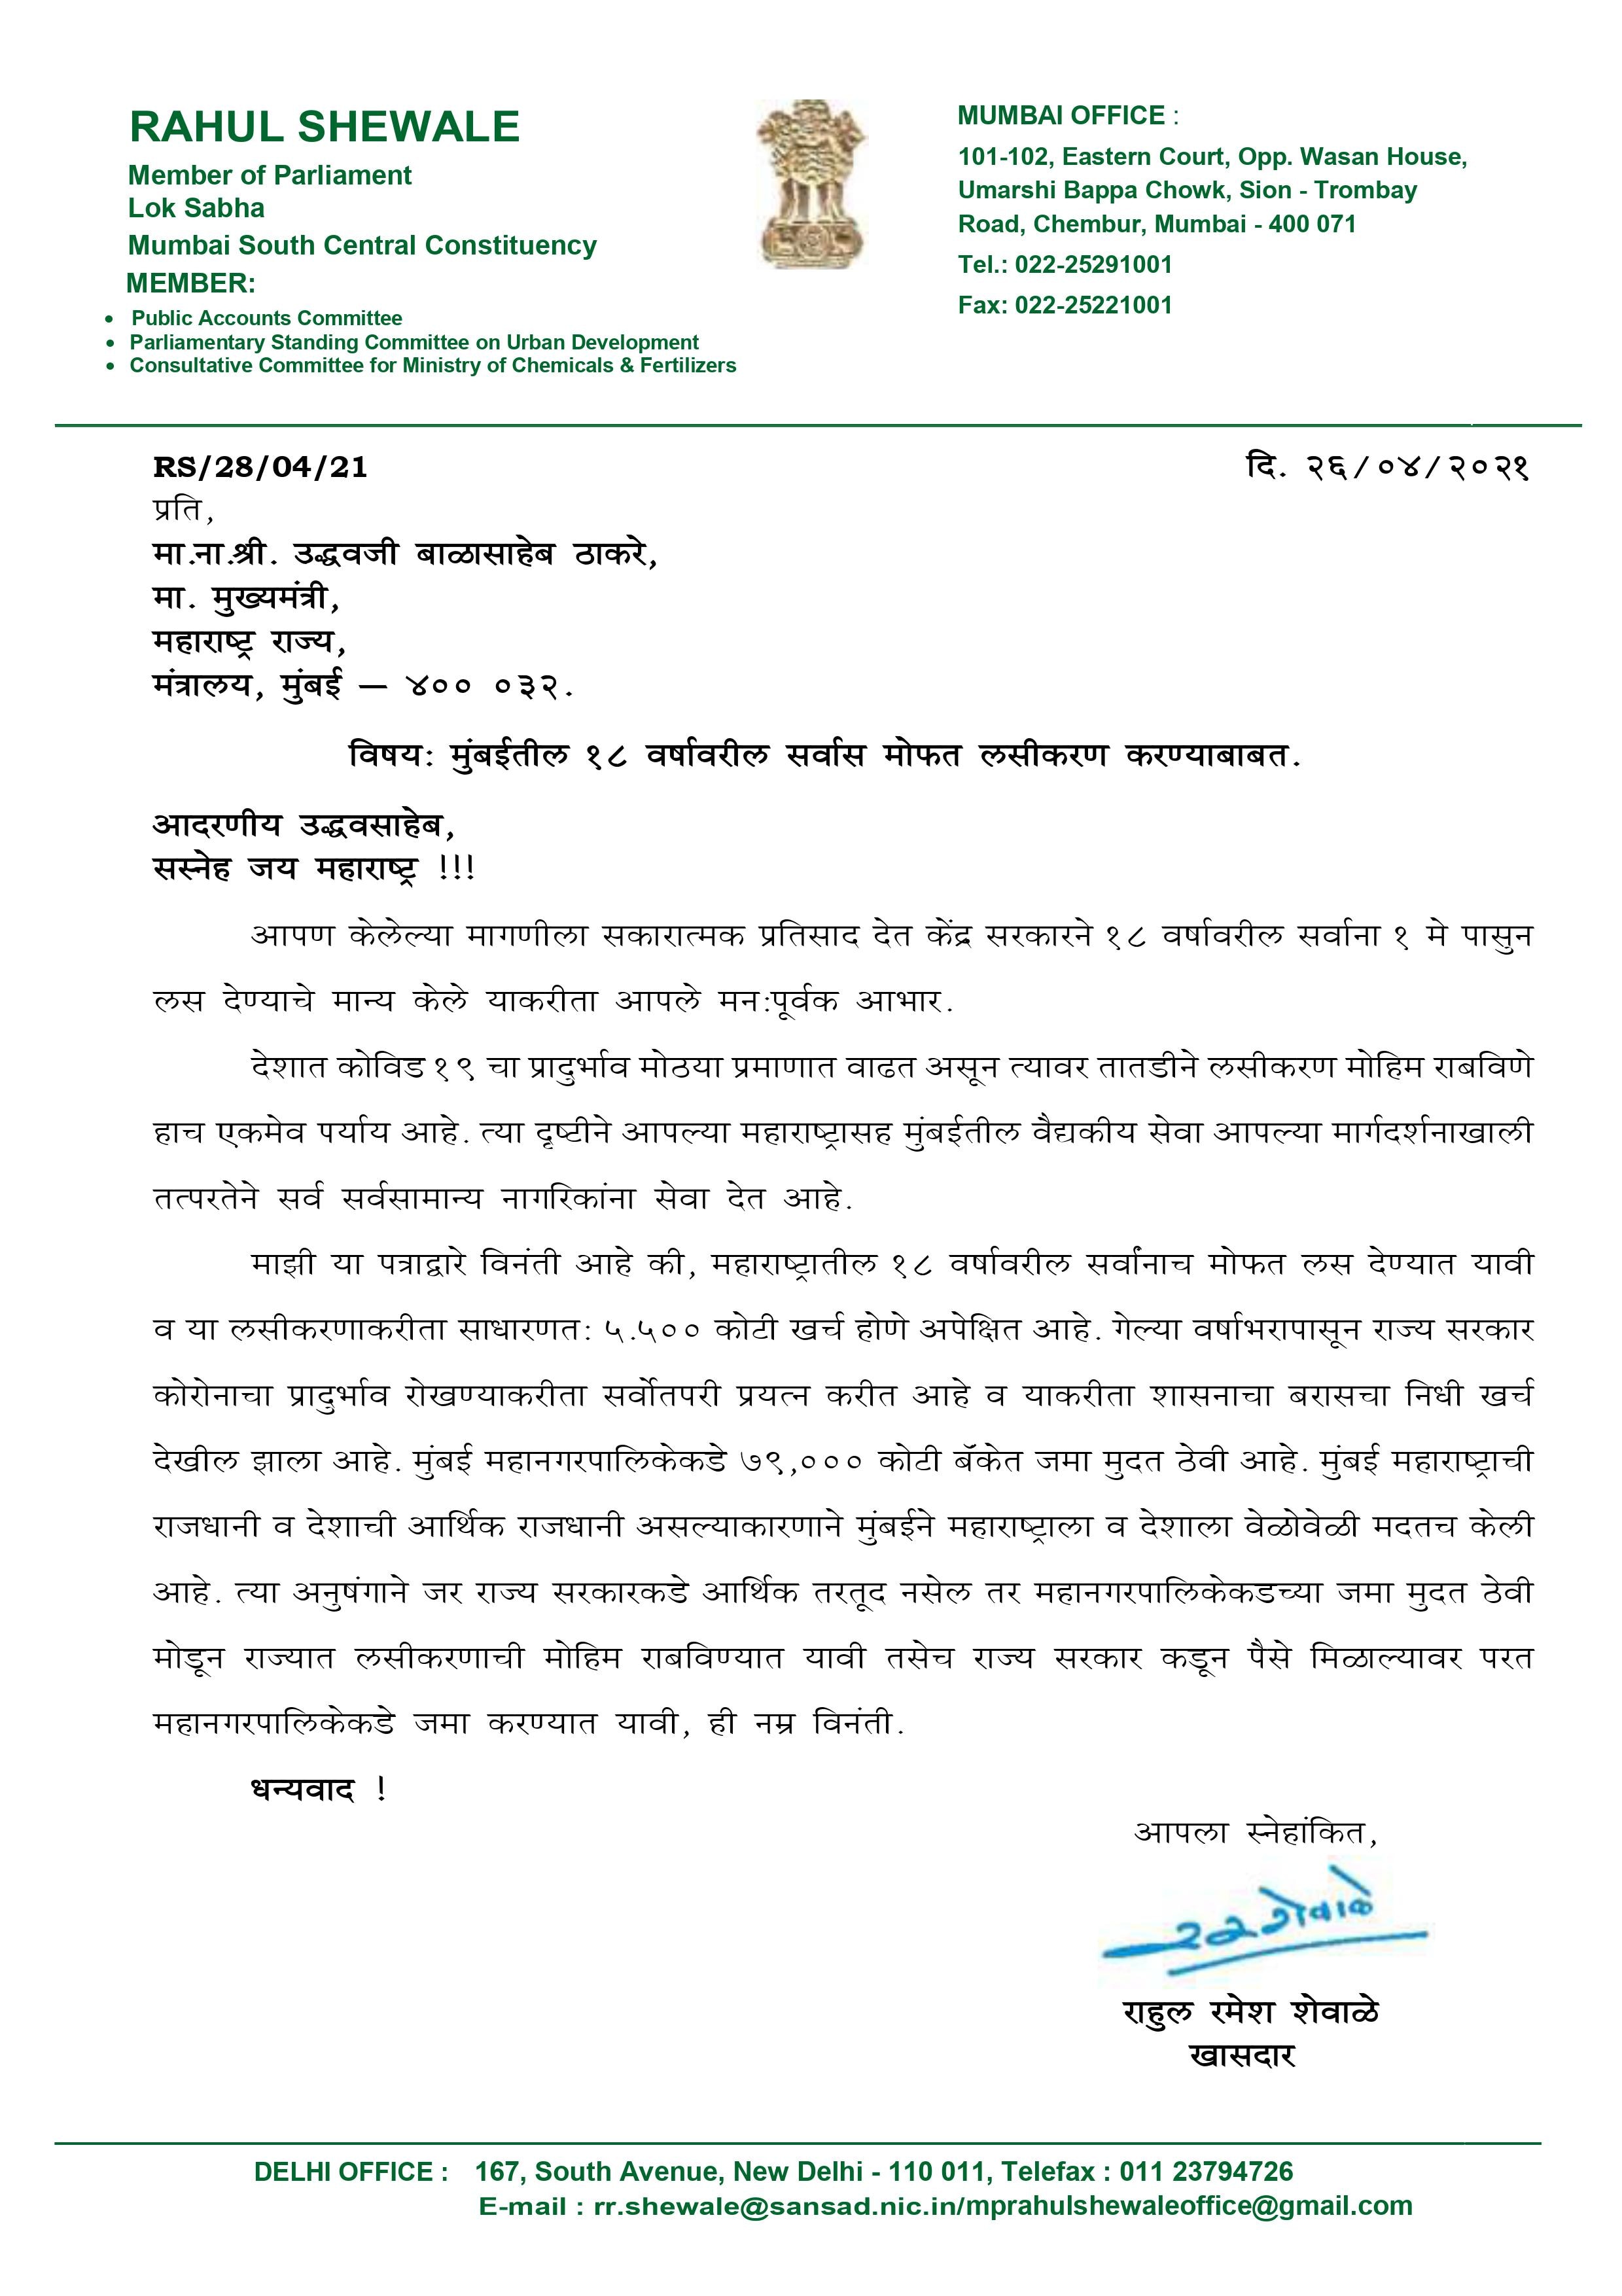 Mumbai Municipal Corporation | मोफत लसीकरणासाठी मुंबई महापालिकेच्या हजारो कोटींच्या एफडी मोडाव्या, खासदार राहुल शेवाळेंचे मुख्यमंत्र्यांना पत्र